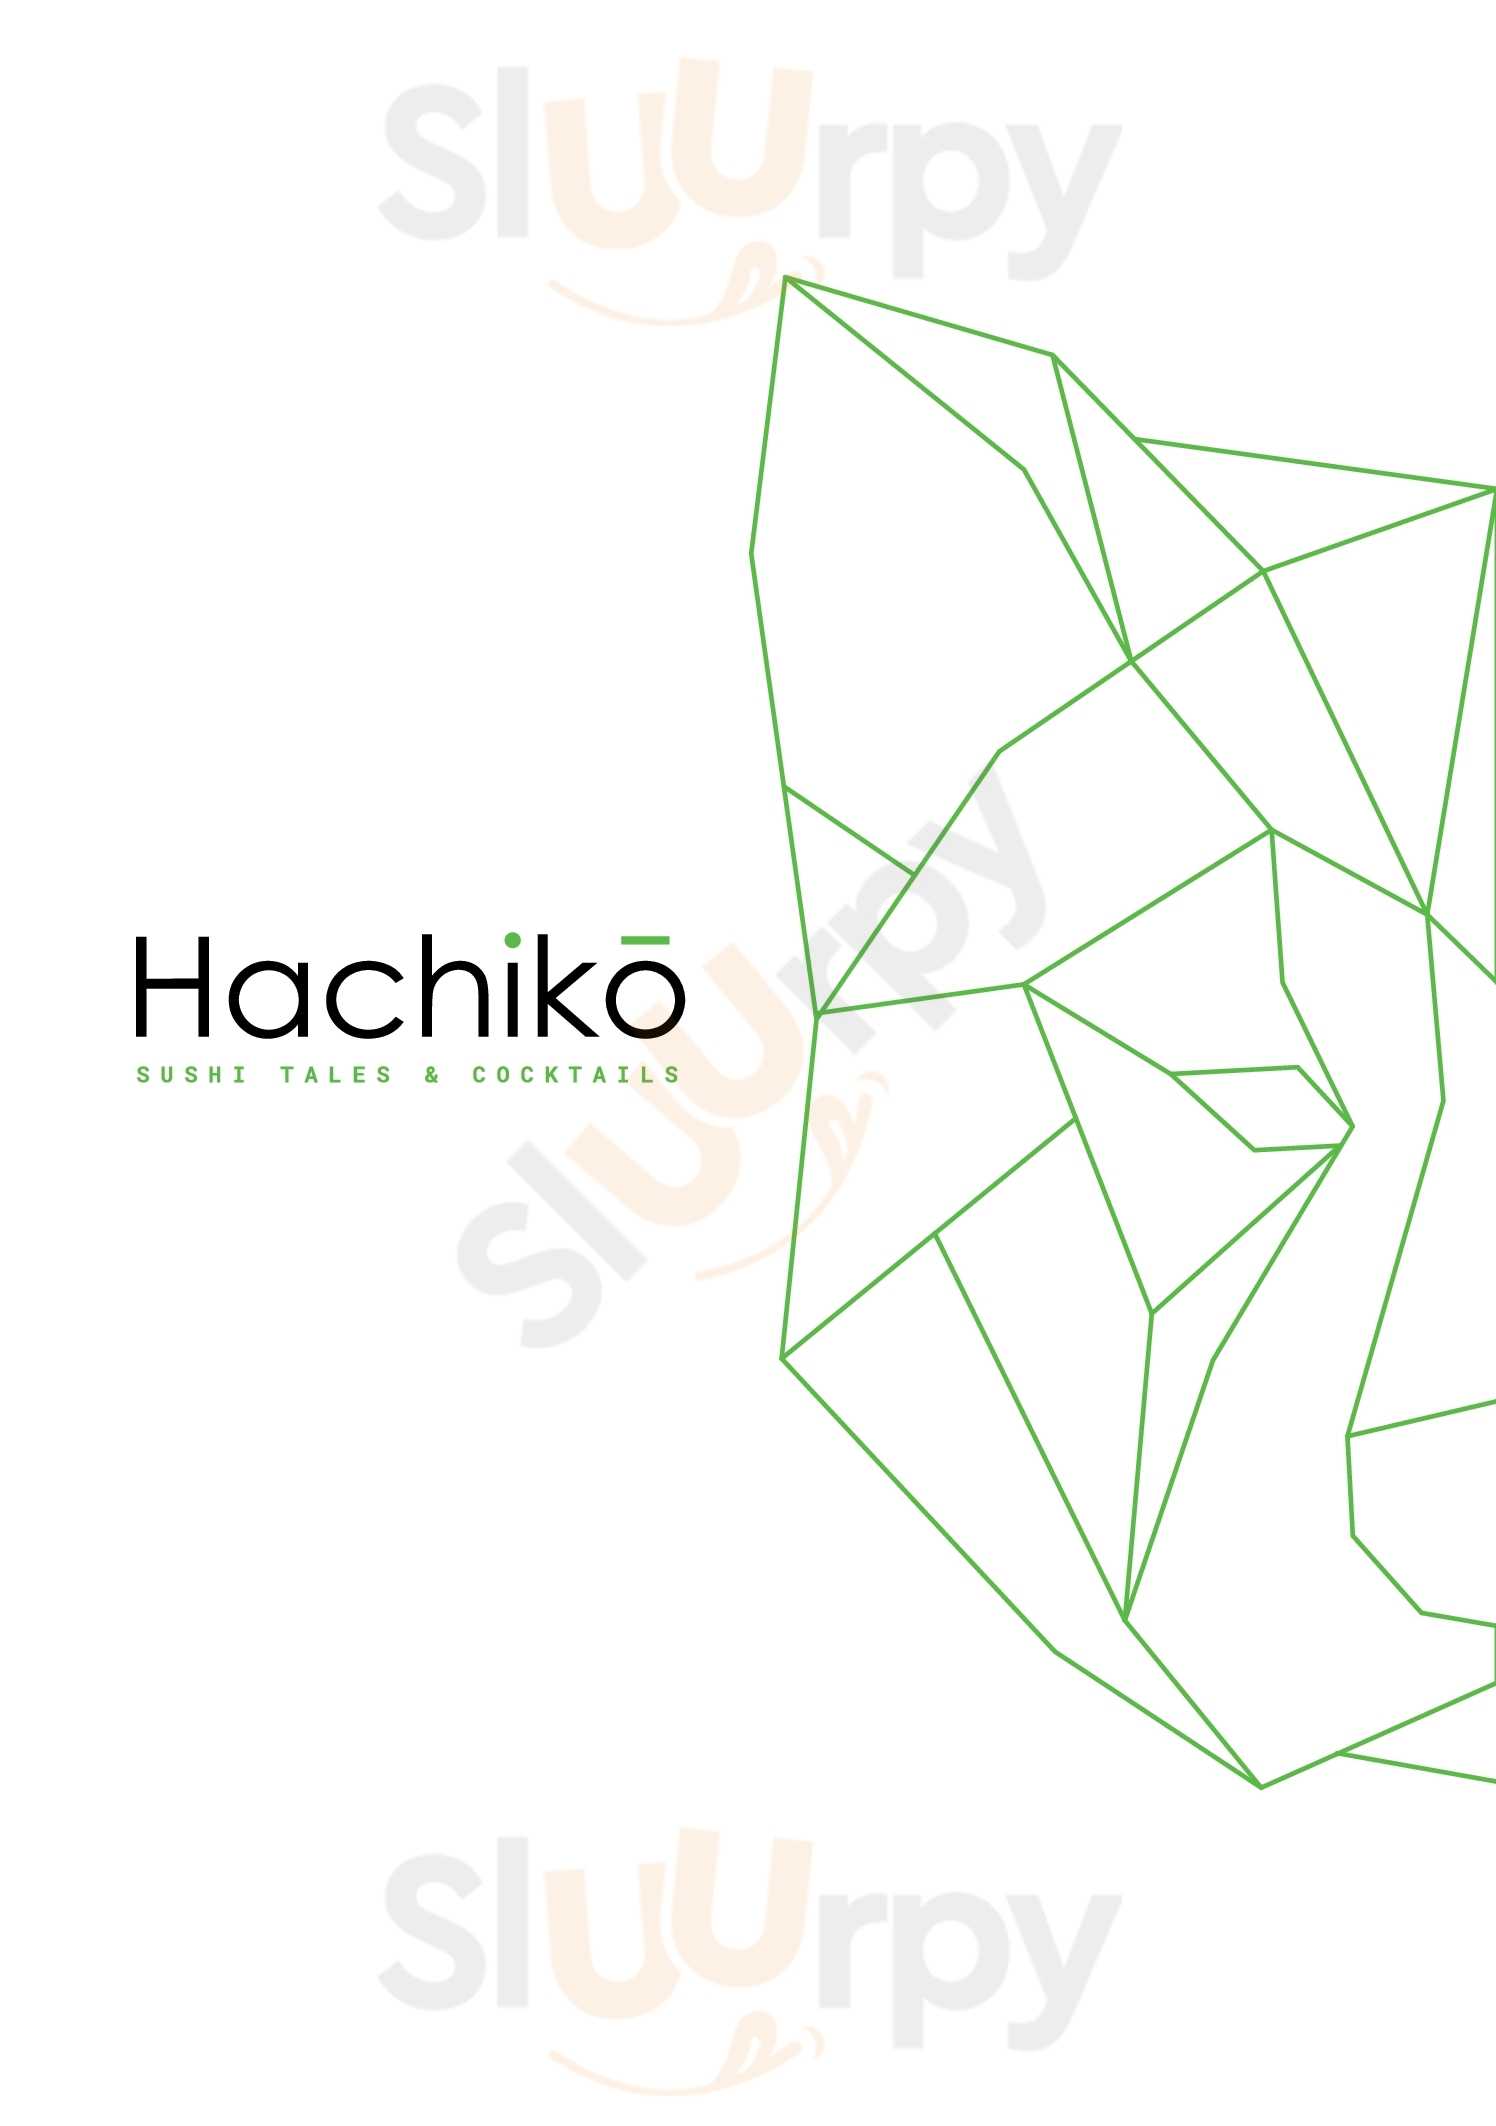 Hachikō Sushi Tales & Cocktails Santorini Φηρά Menu - 1